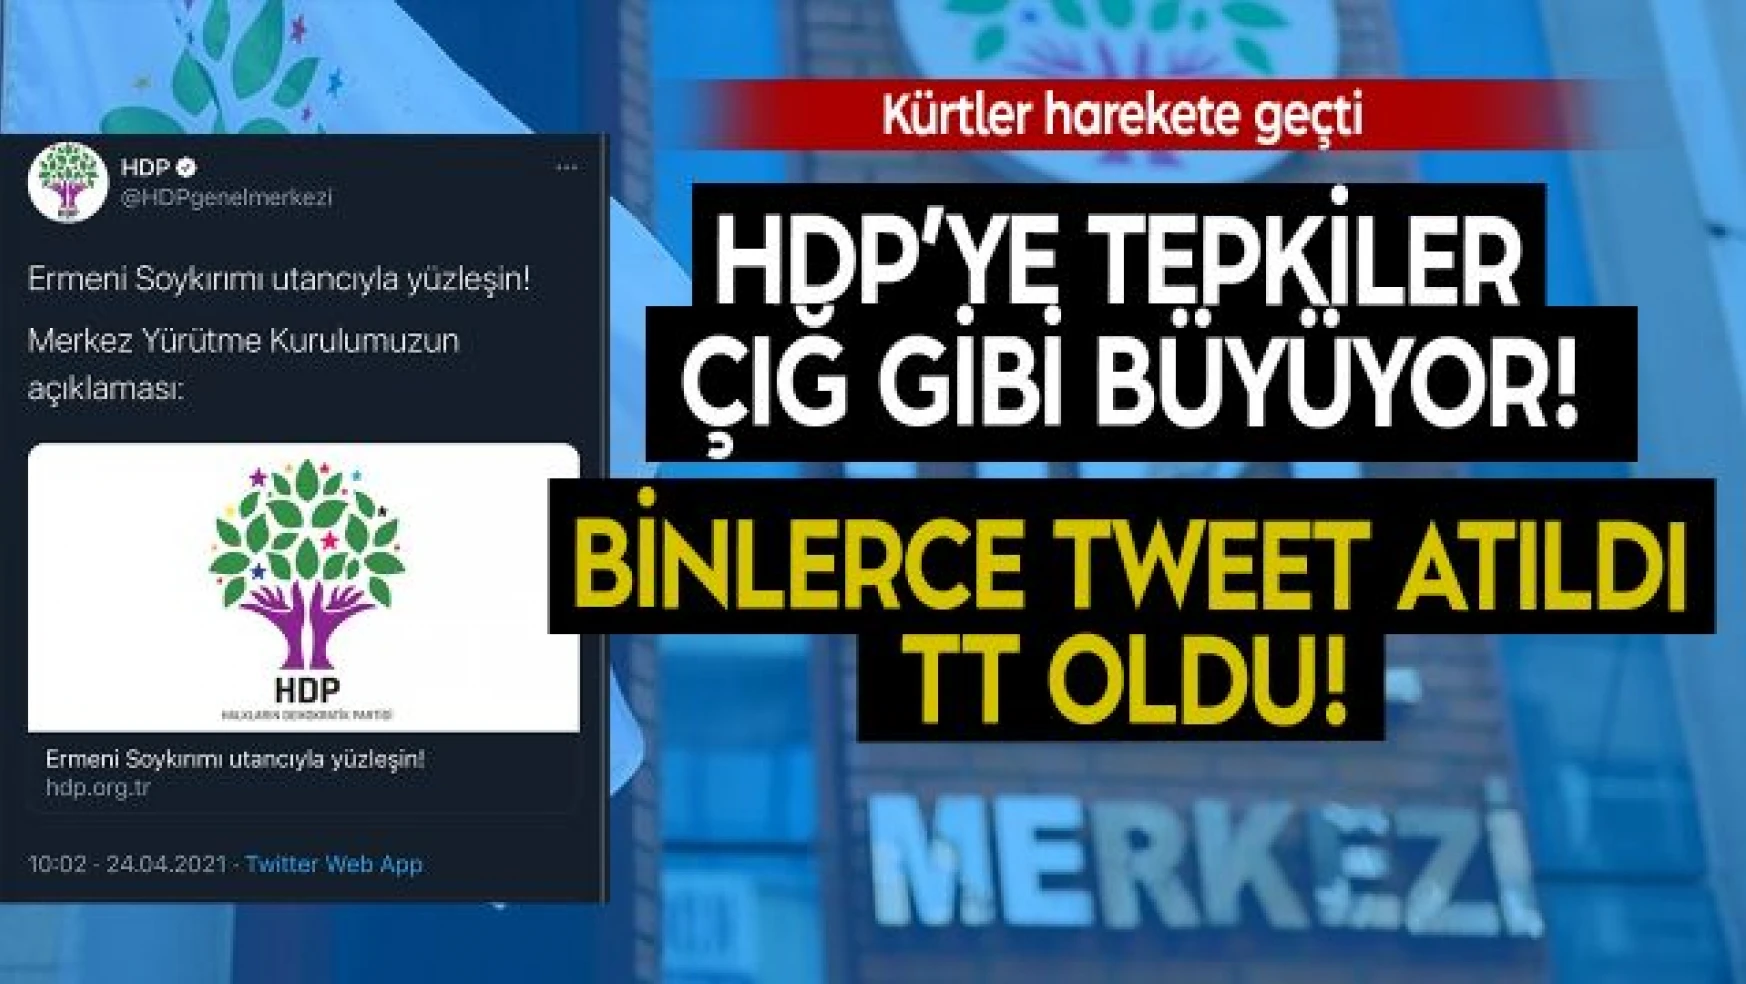 HDP'nin gerçek yüzü Twitter'da gündem oldu